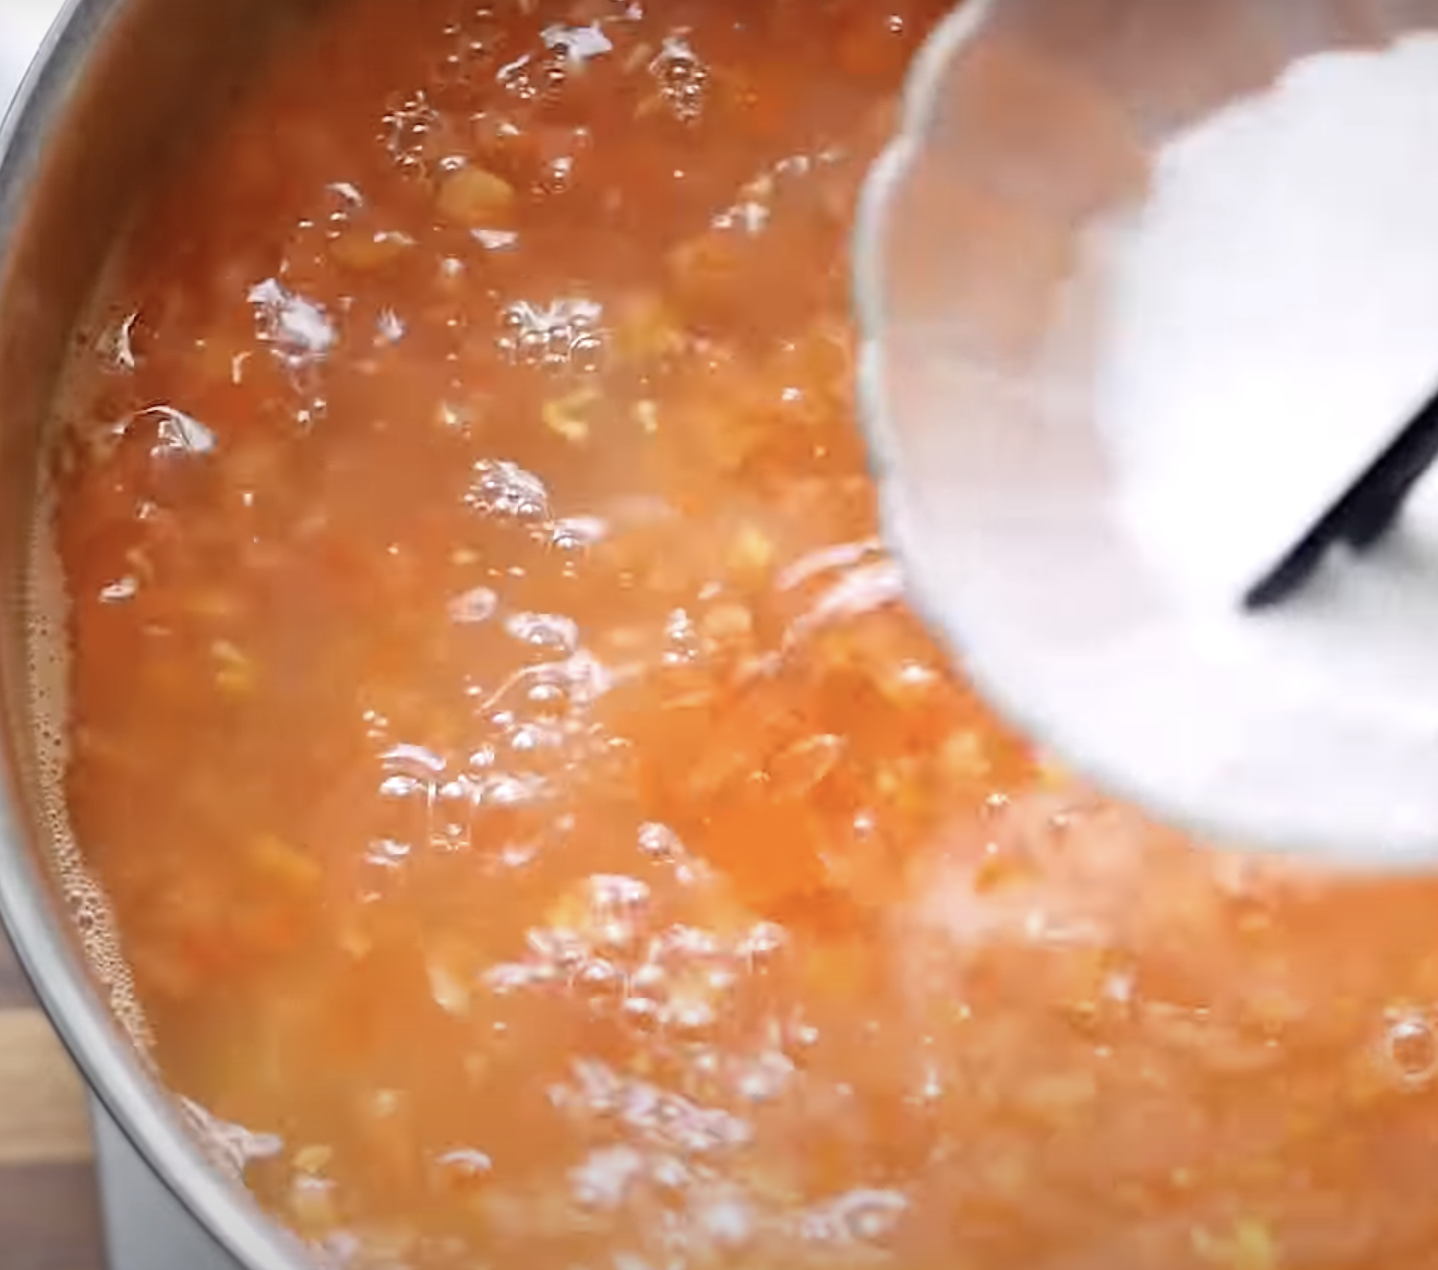 Image of Despejar a fécula de milho batida no wok e continuar...